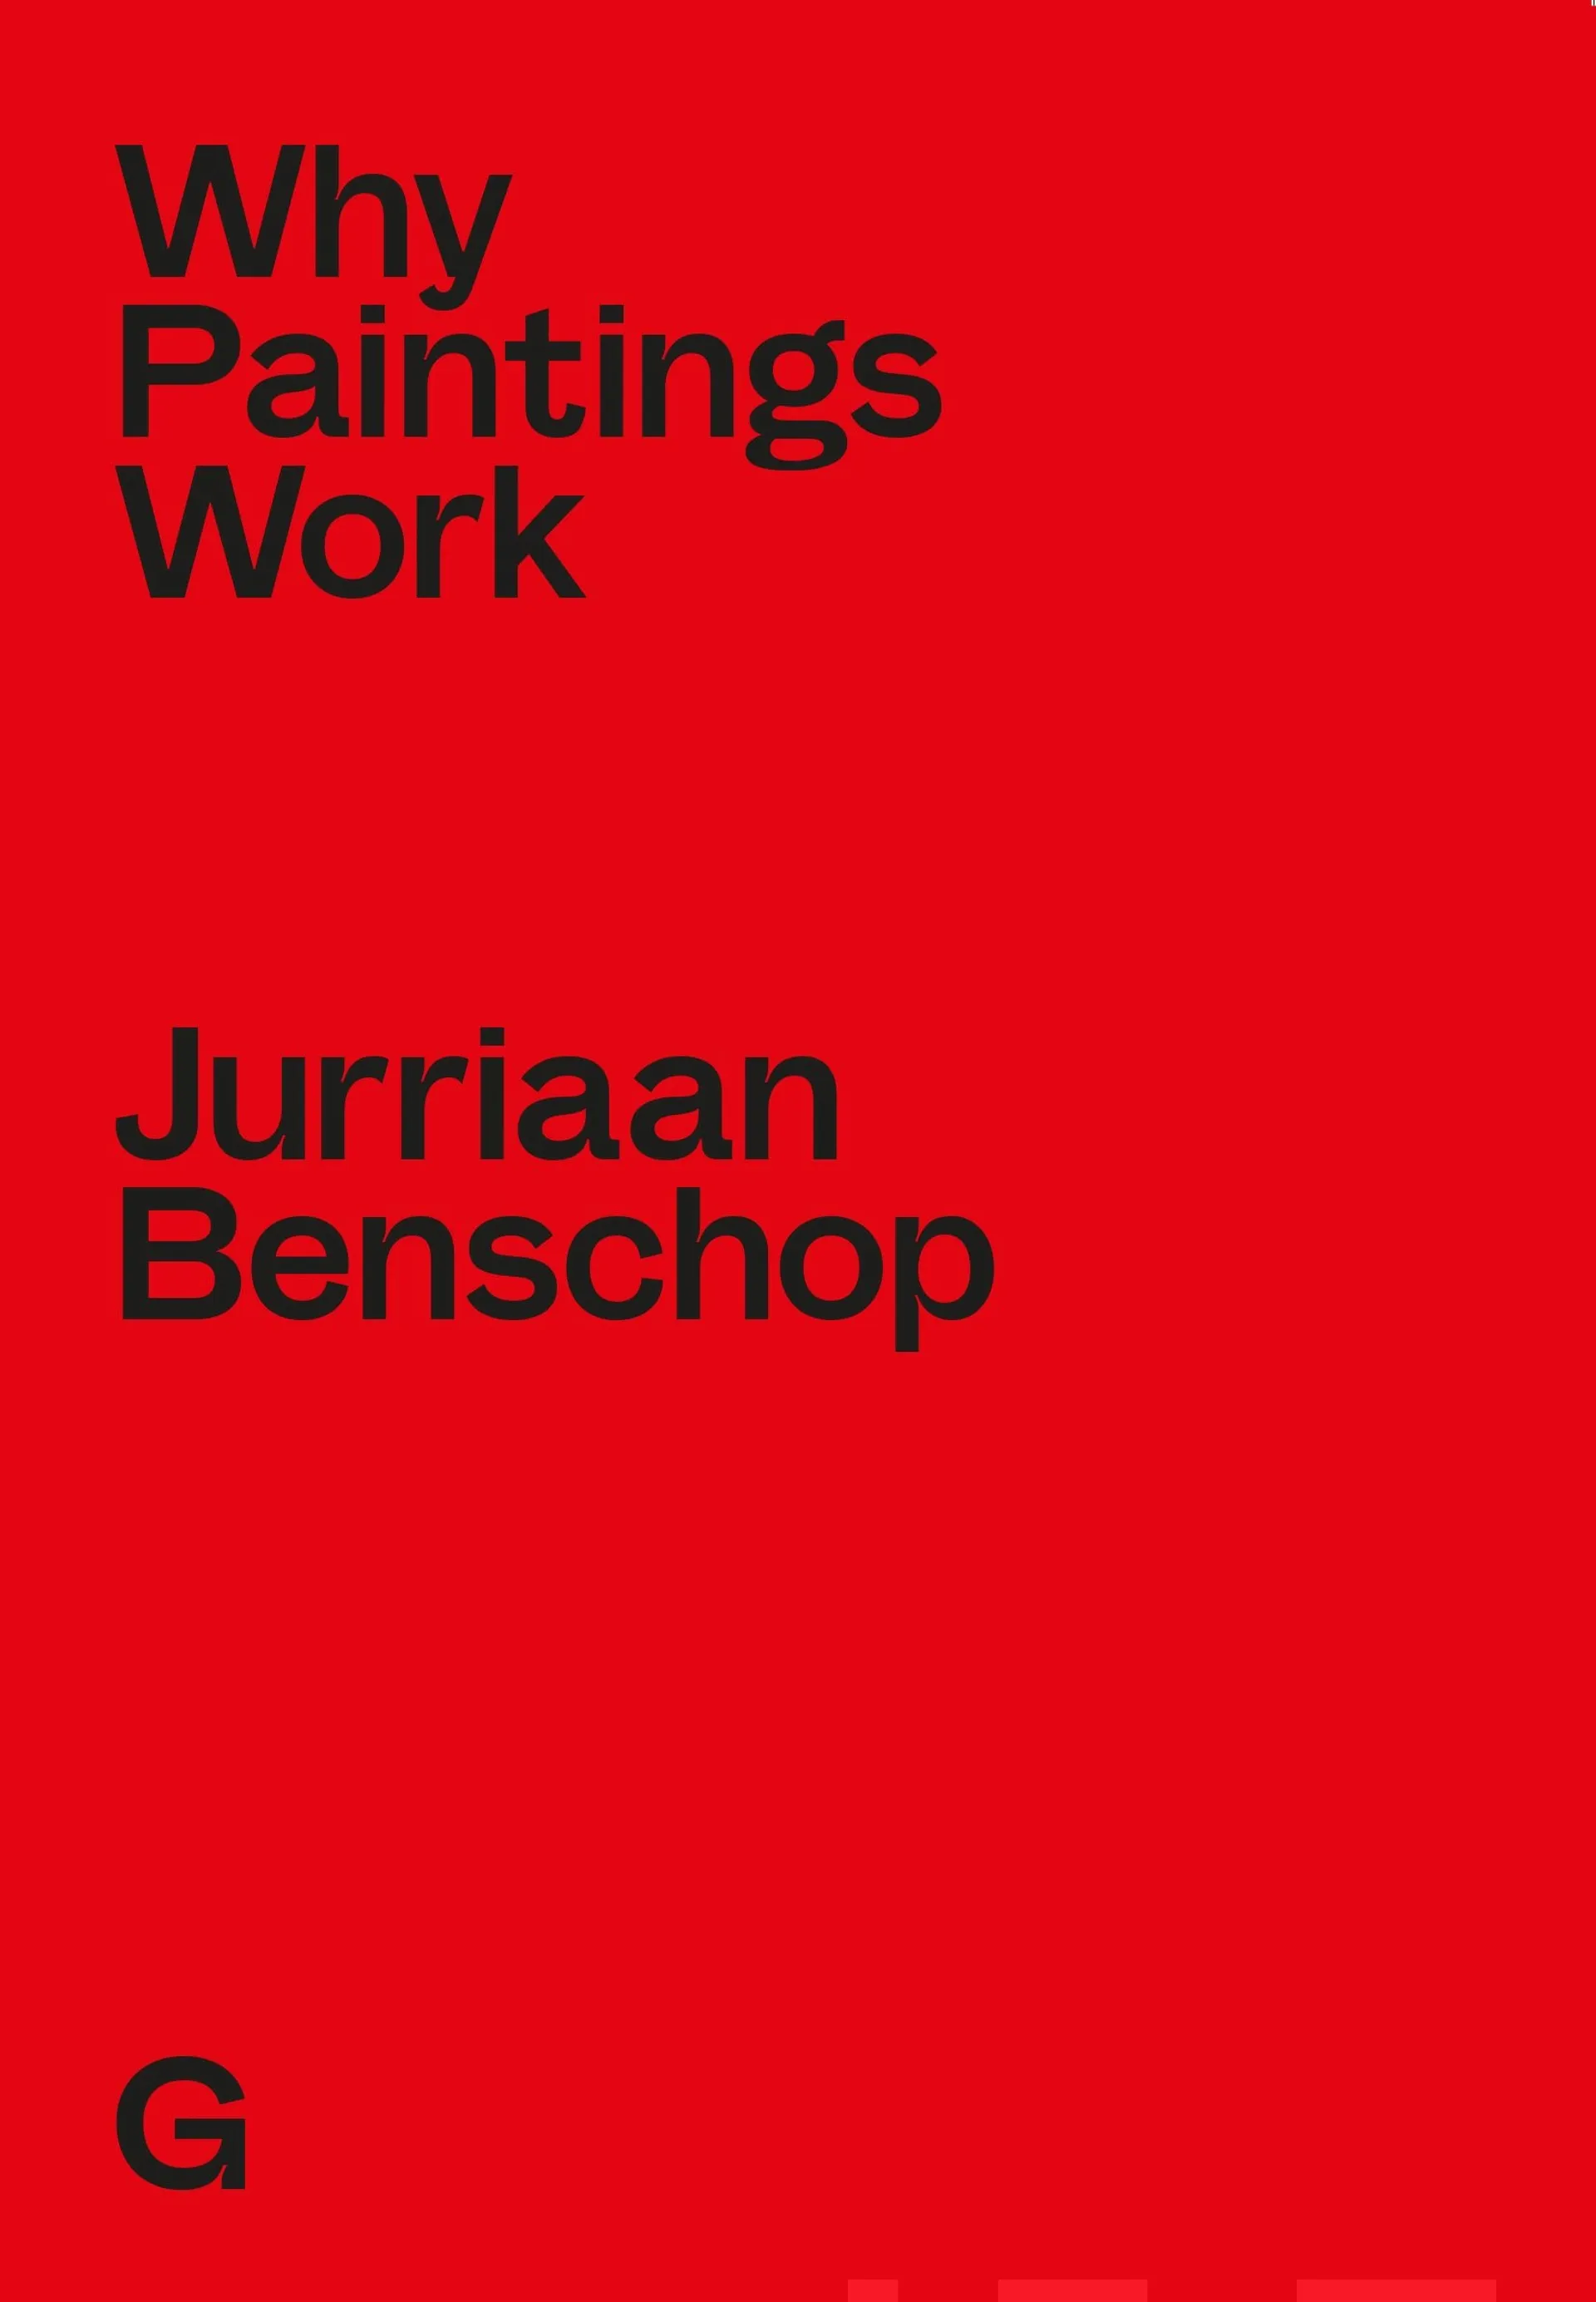 Benschop, Why Paintings Work